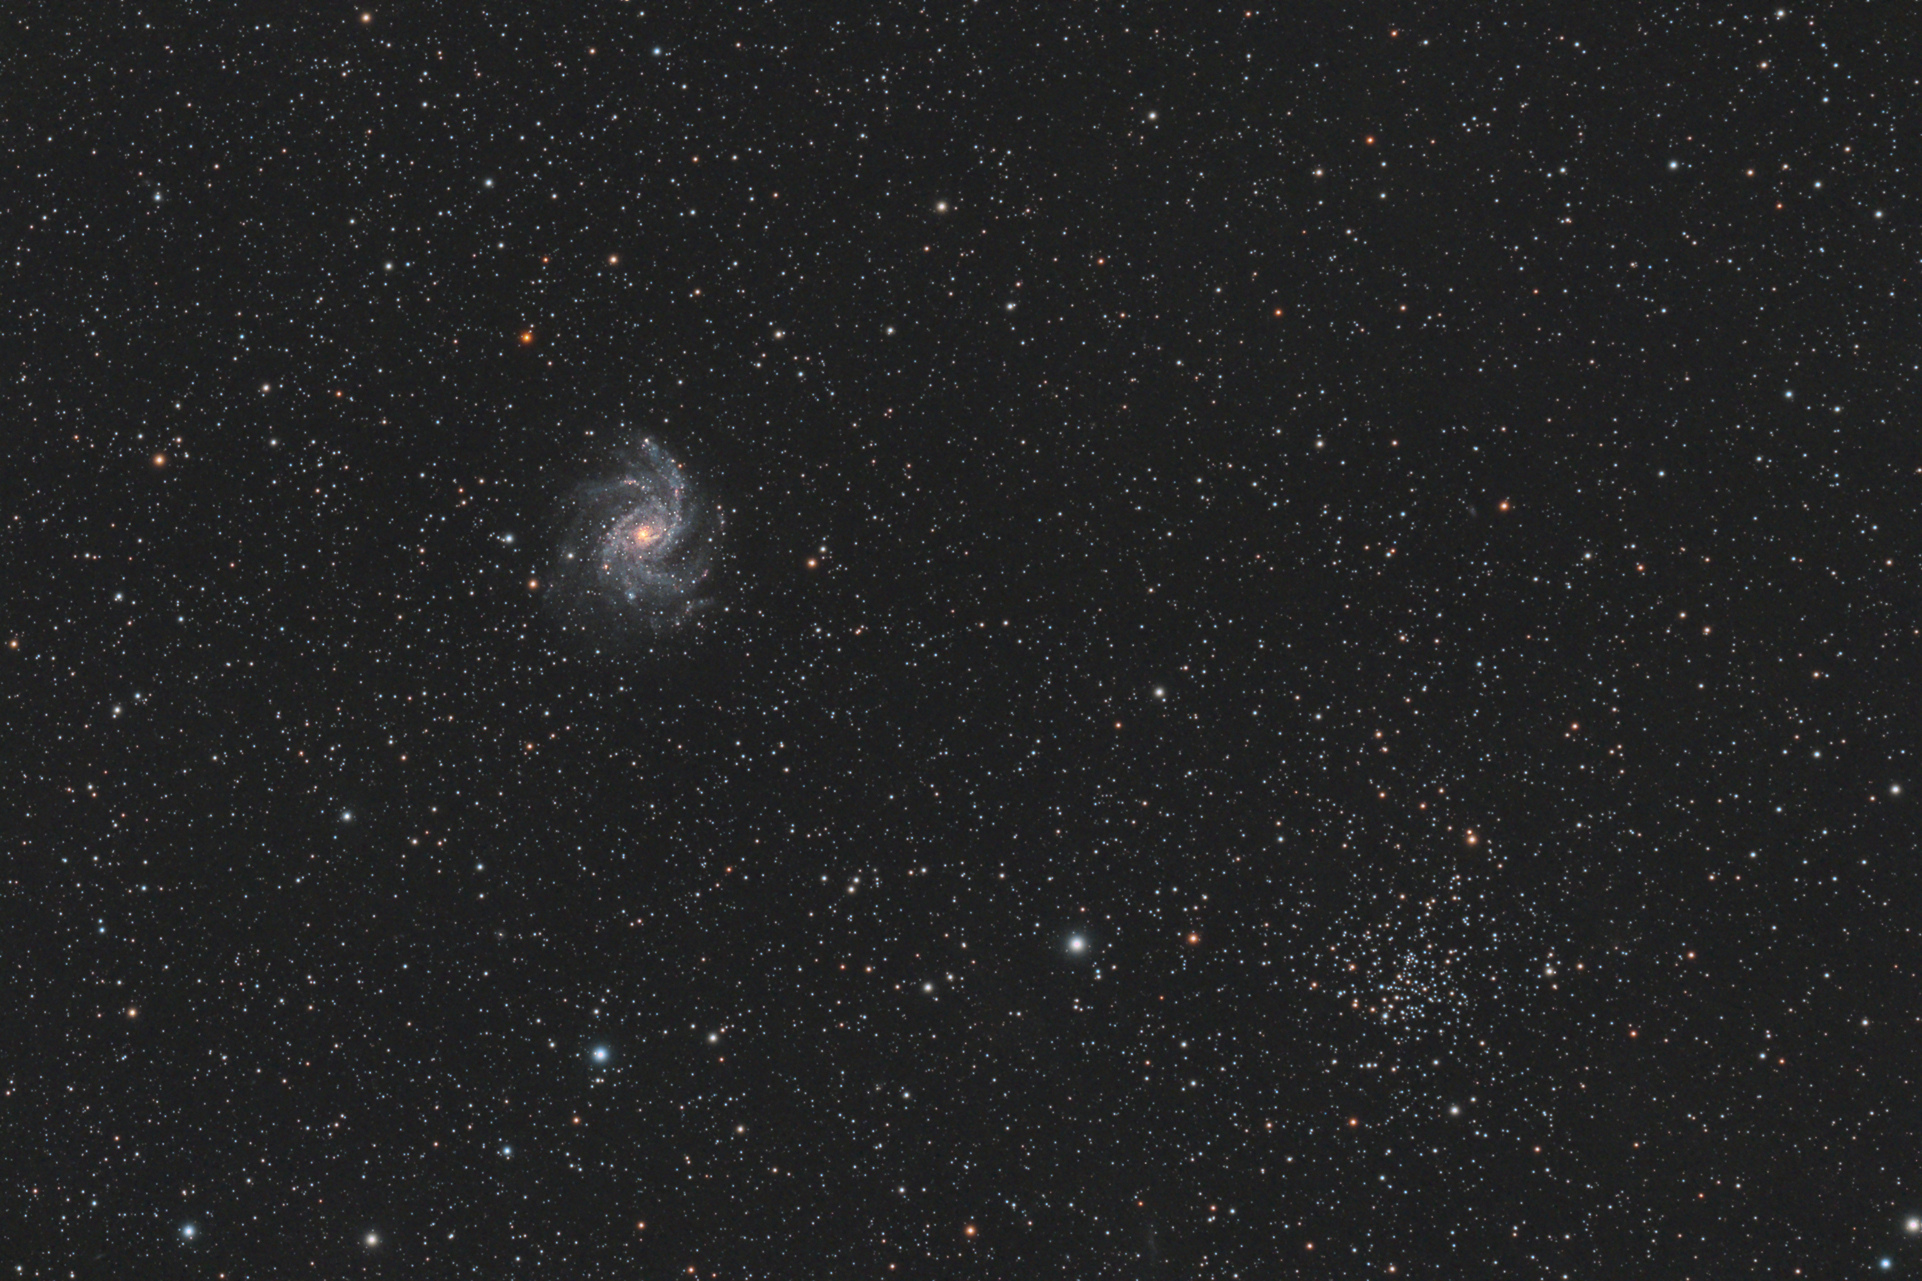 5ded3fcf2ed29_NGC6946_1922x1275.jpg.876b036e2f47745c5907bcb5f9ebea11.jpg